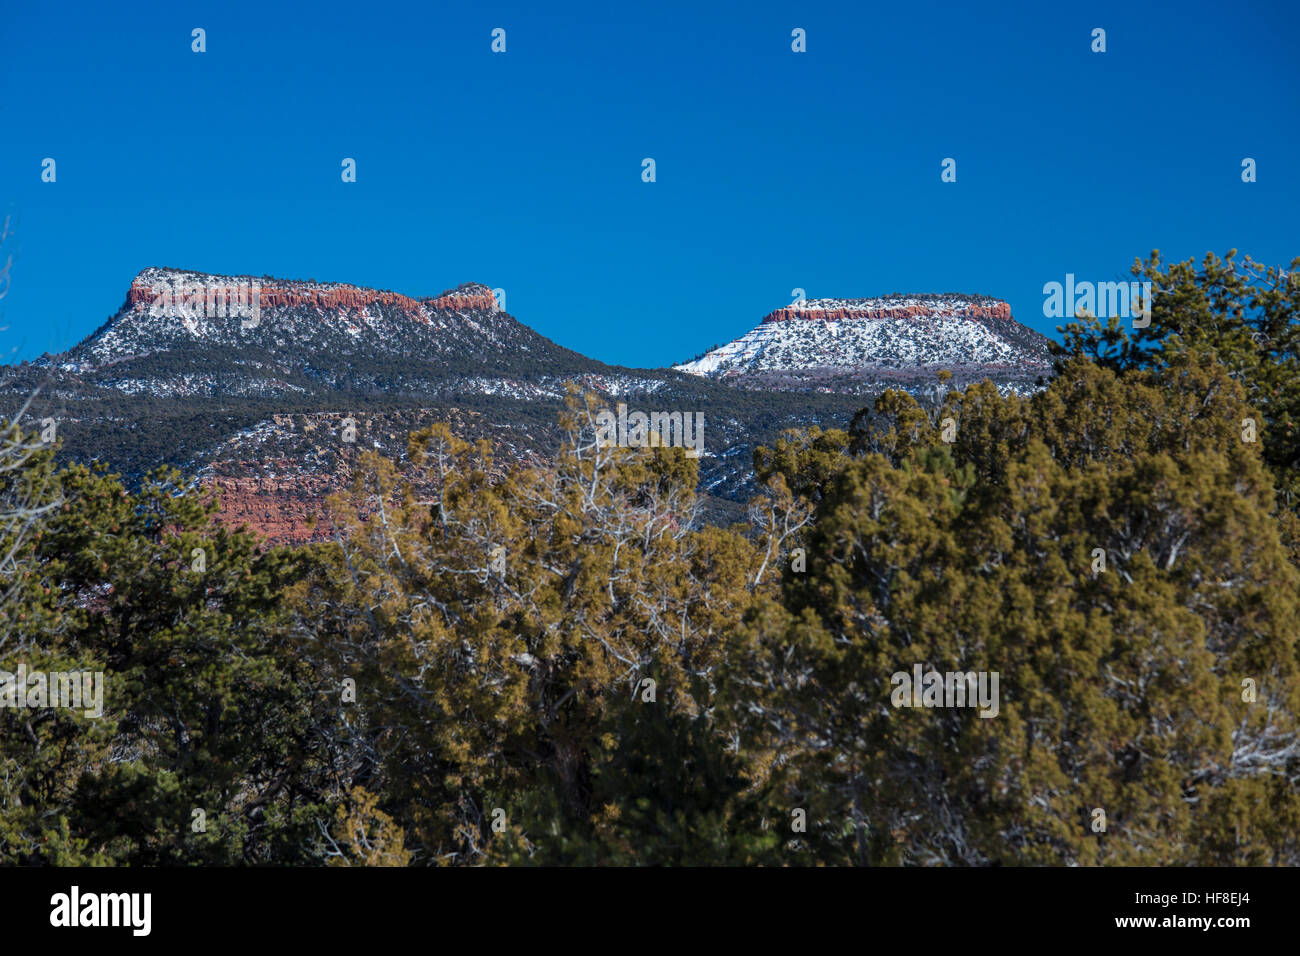 Blanding, Utah - porta le orecchie del Monumento Nazionale, che protegge da 1,35 milioni di acri nel sudest dell'Utah. Il monumento nazionale è chiamato dopo due eminenti buttes, orsi orecchie, che può essere visto in tutto il territorio della regione. Credito: Jim West/Alamy Live News Foto Stock